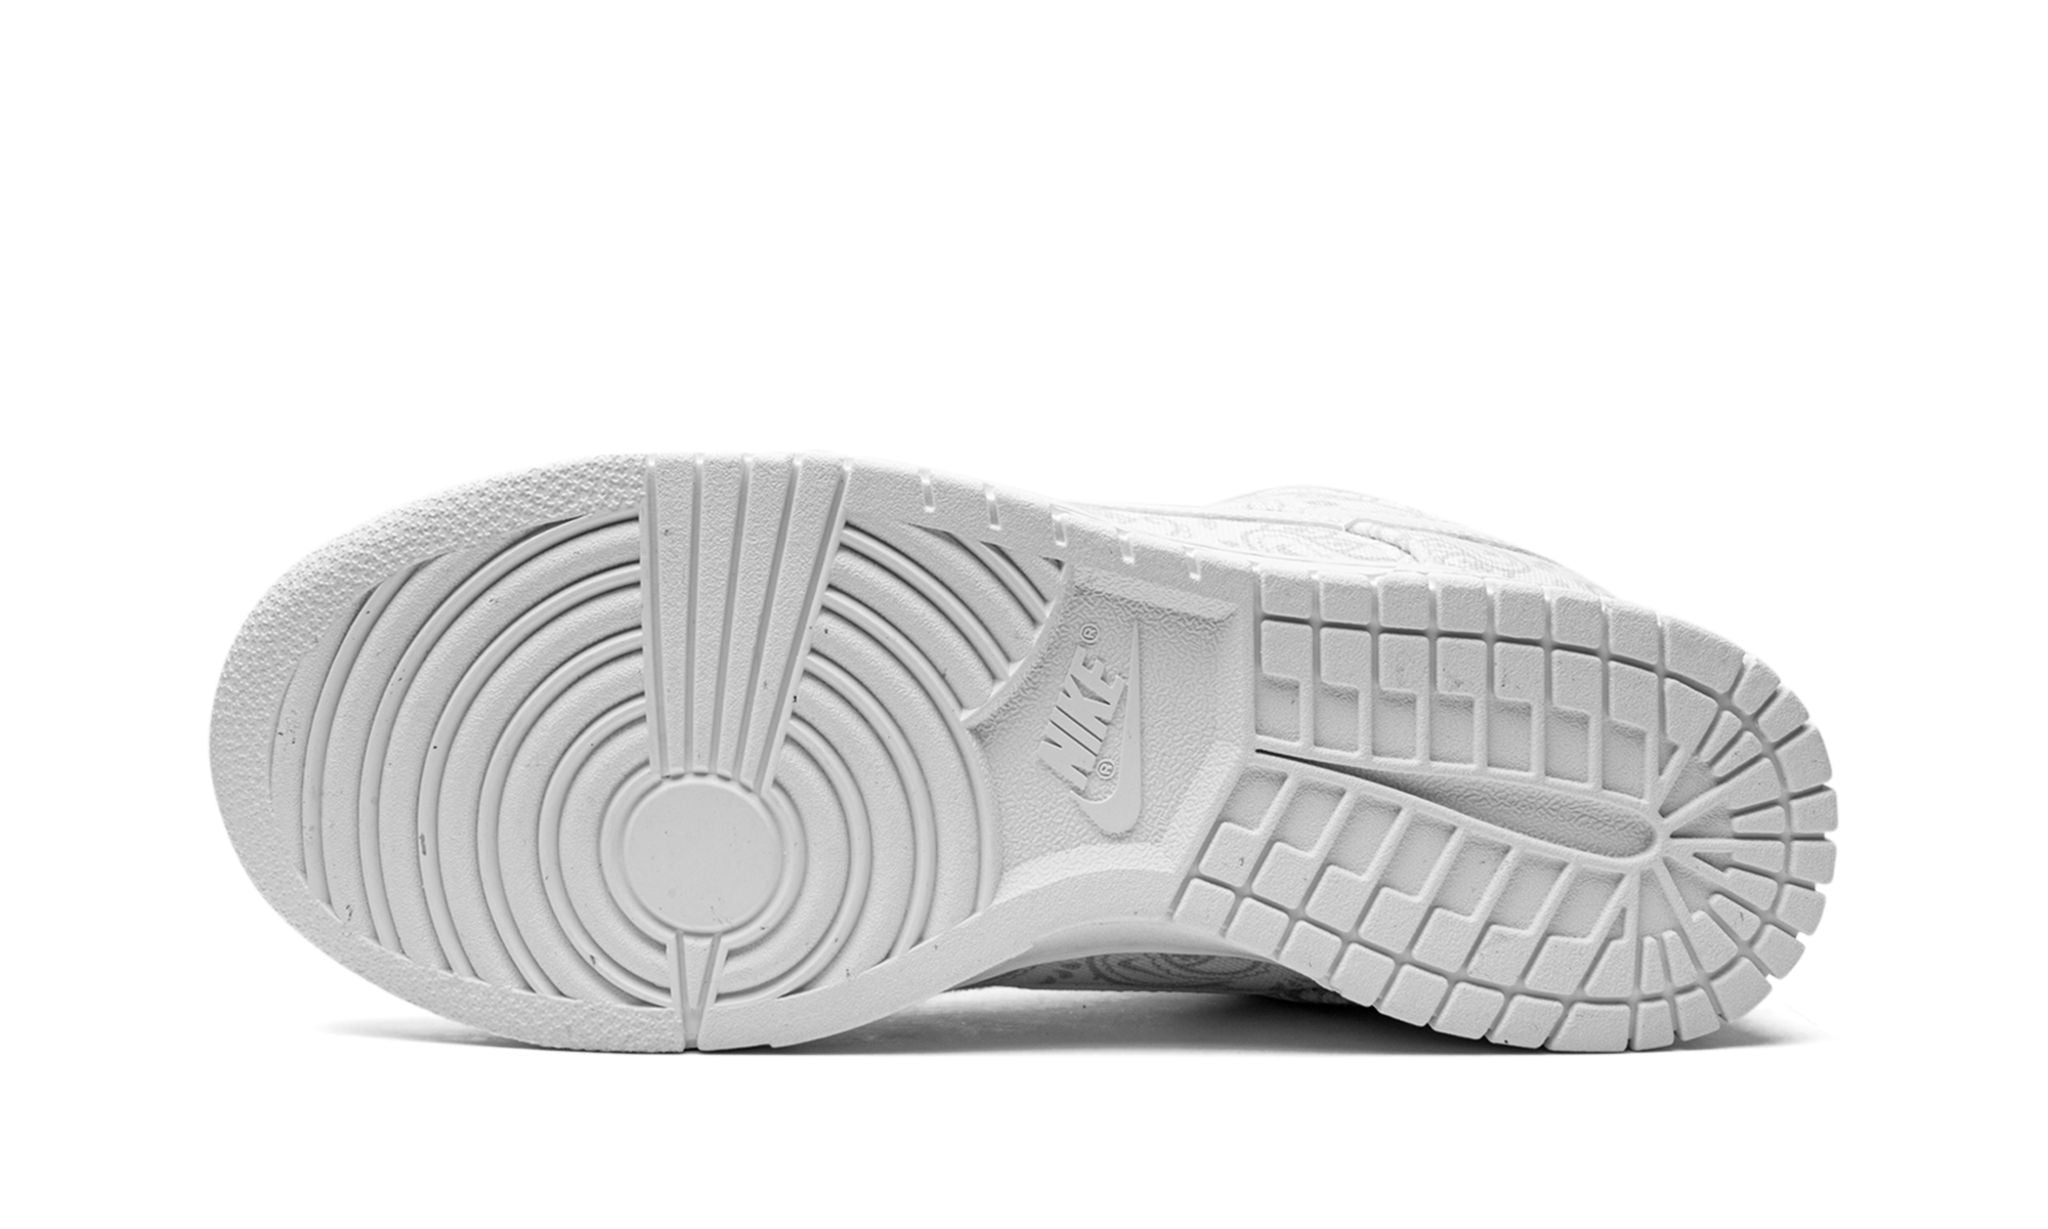 Nike Dunk Low "White Paisley" (W) - DJ9955-100 - Sneakers